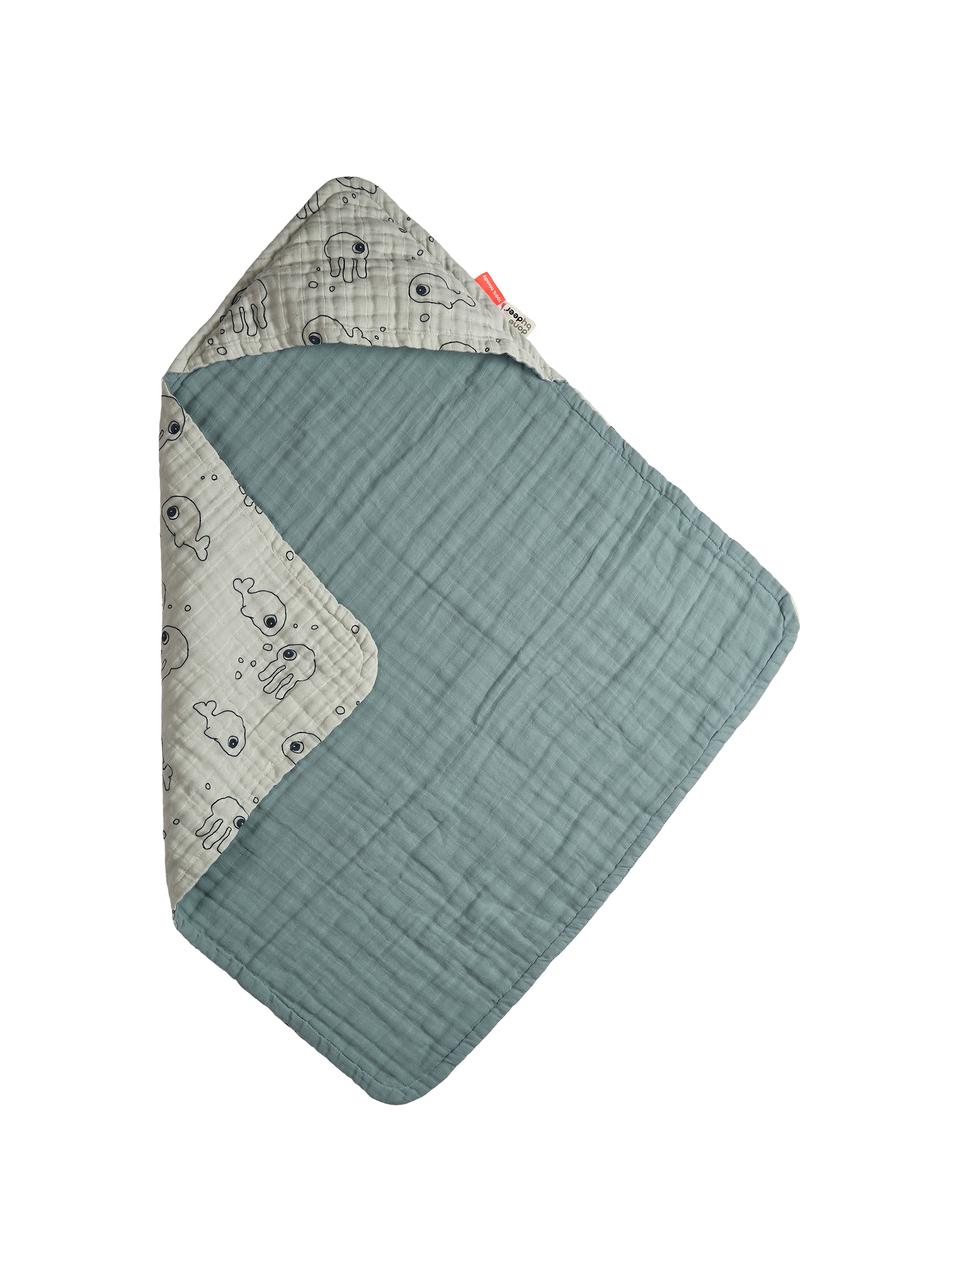 Asciugamano per bambini Sea Friends, 100% cotone, certificato Oeko-Tex, Blu, Larg. 70 x Lung. 70 cm